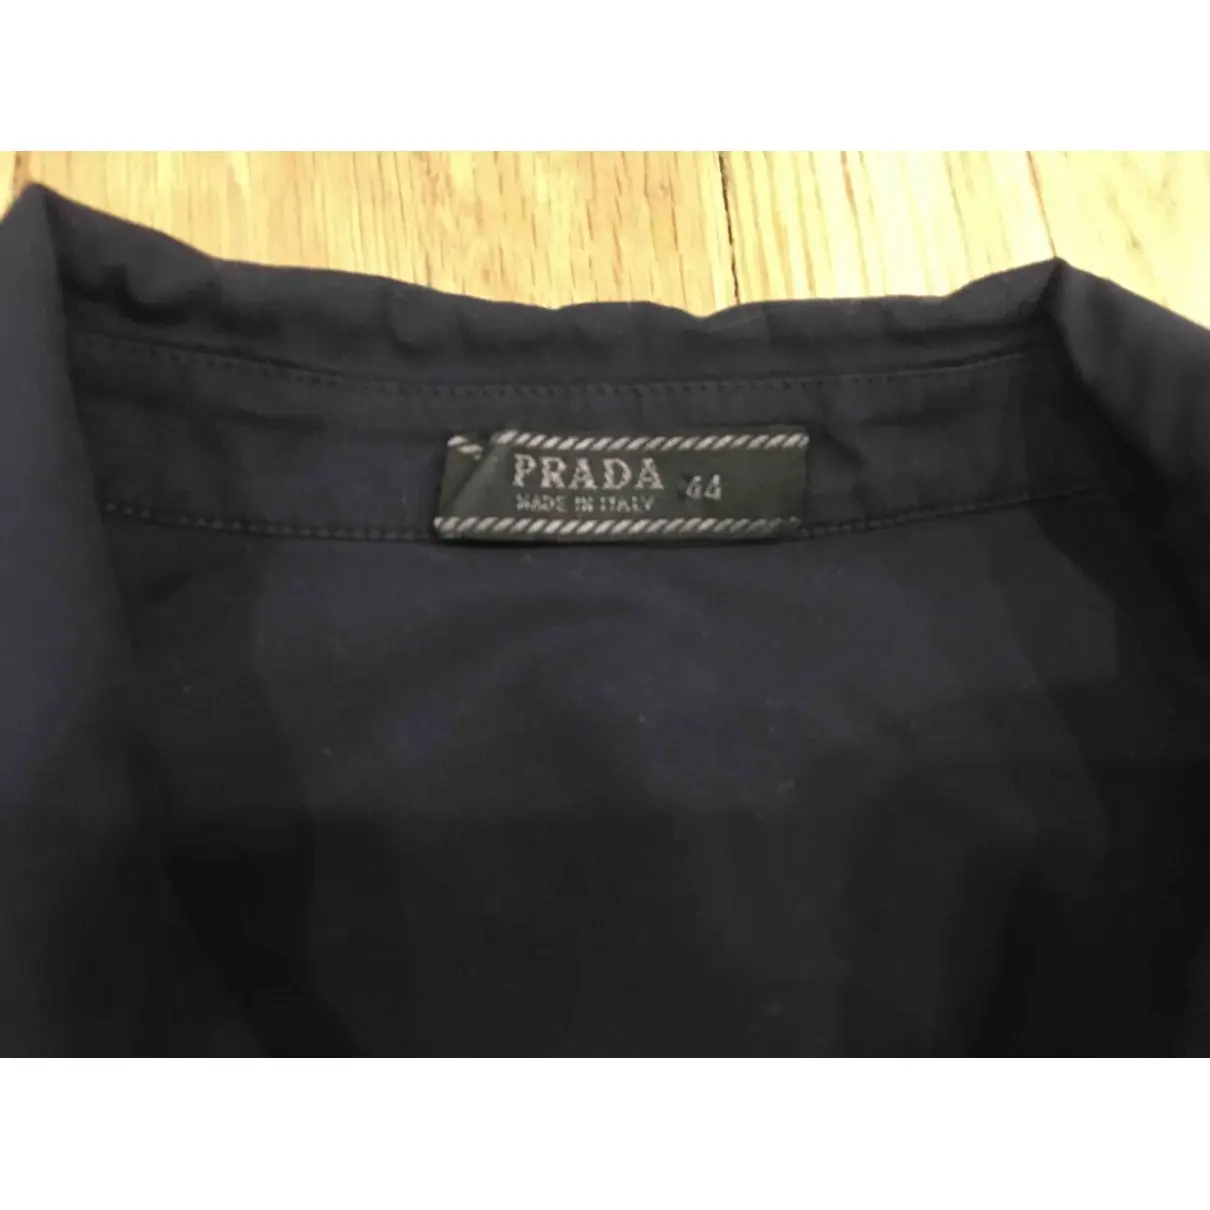 Buy Prada Shirt online